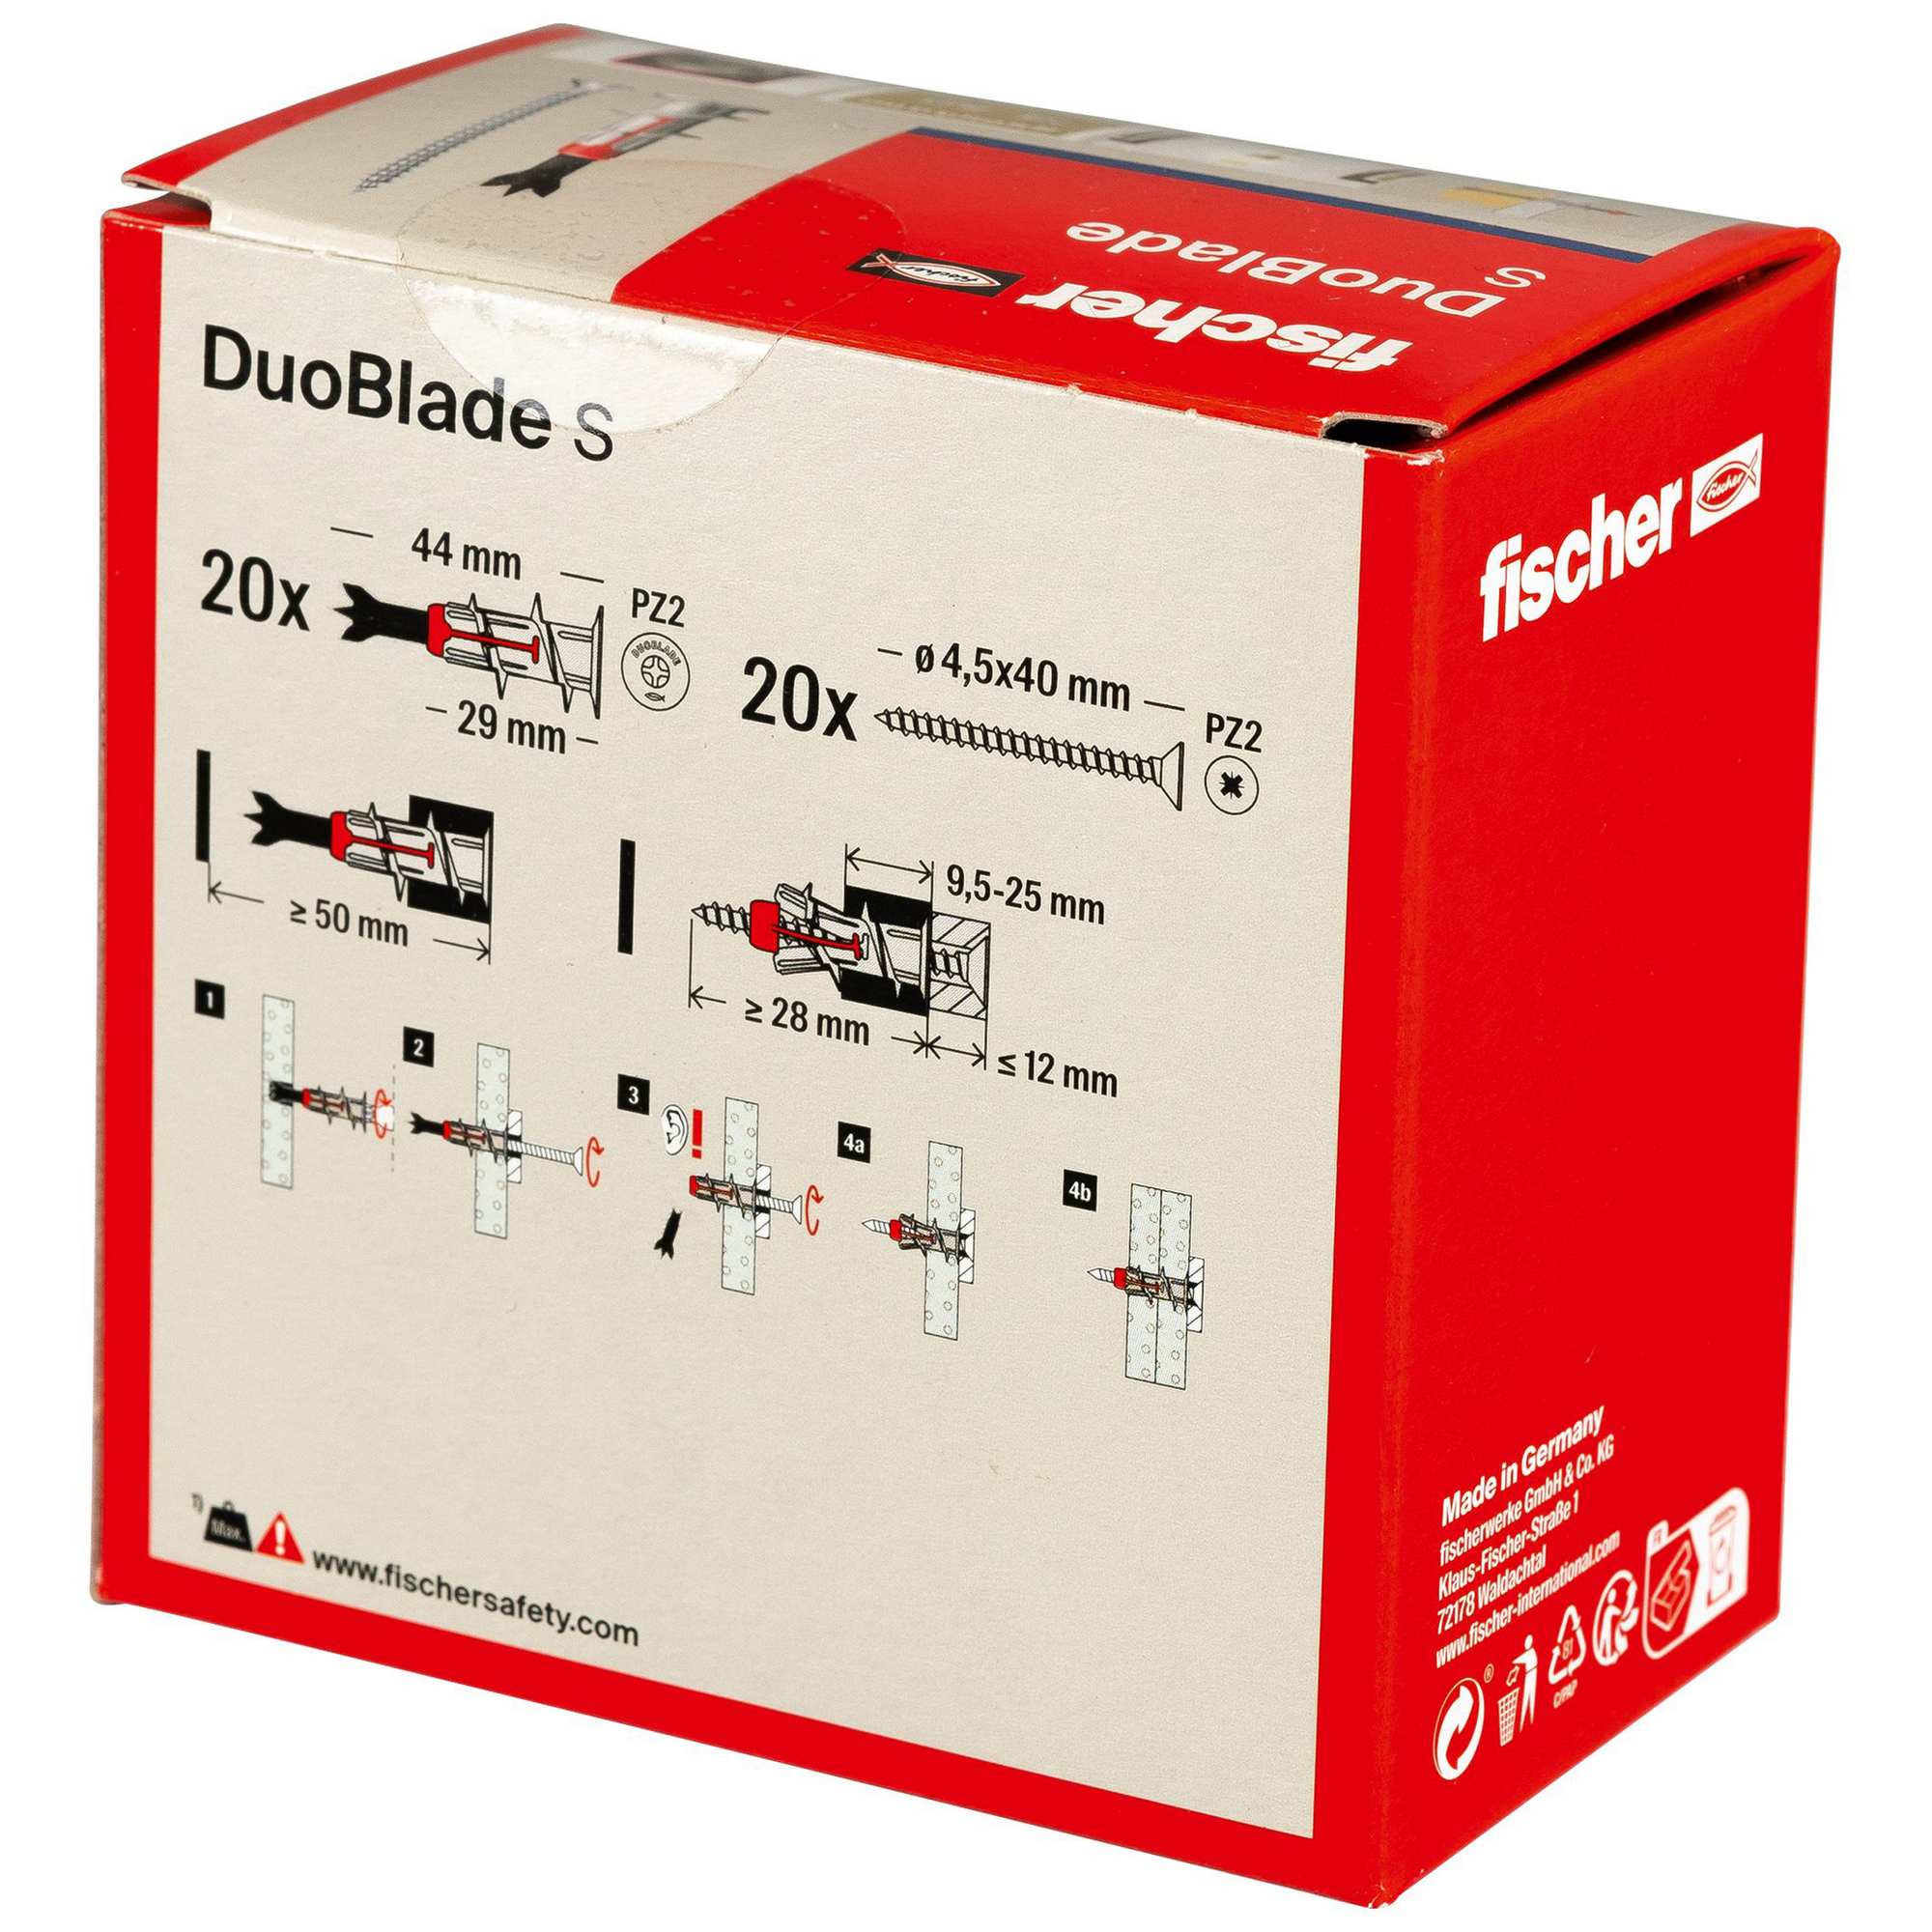 Gipskartonplattendübel und Spanplattenschrauben 'Duoblade S' 40-teilig + product picture